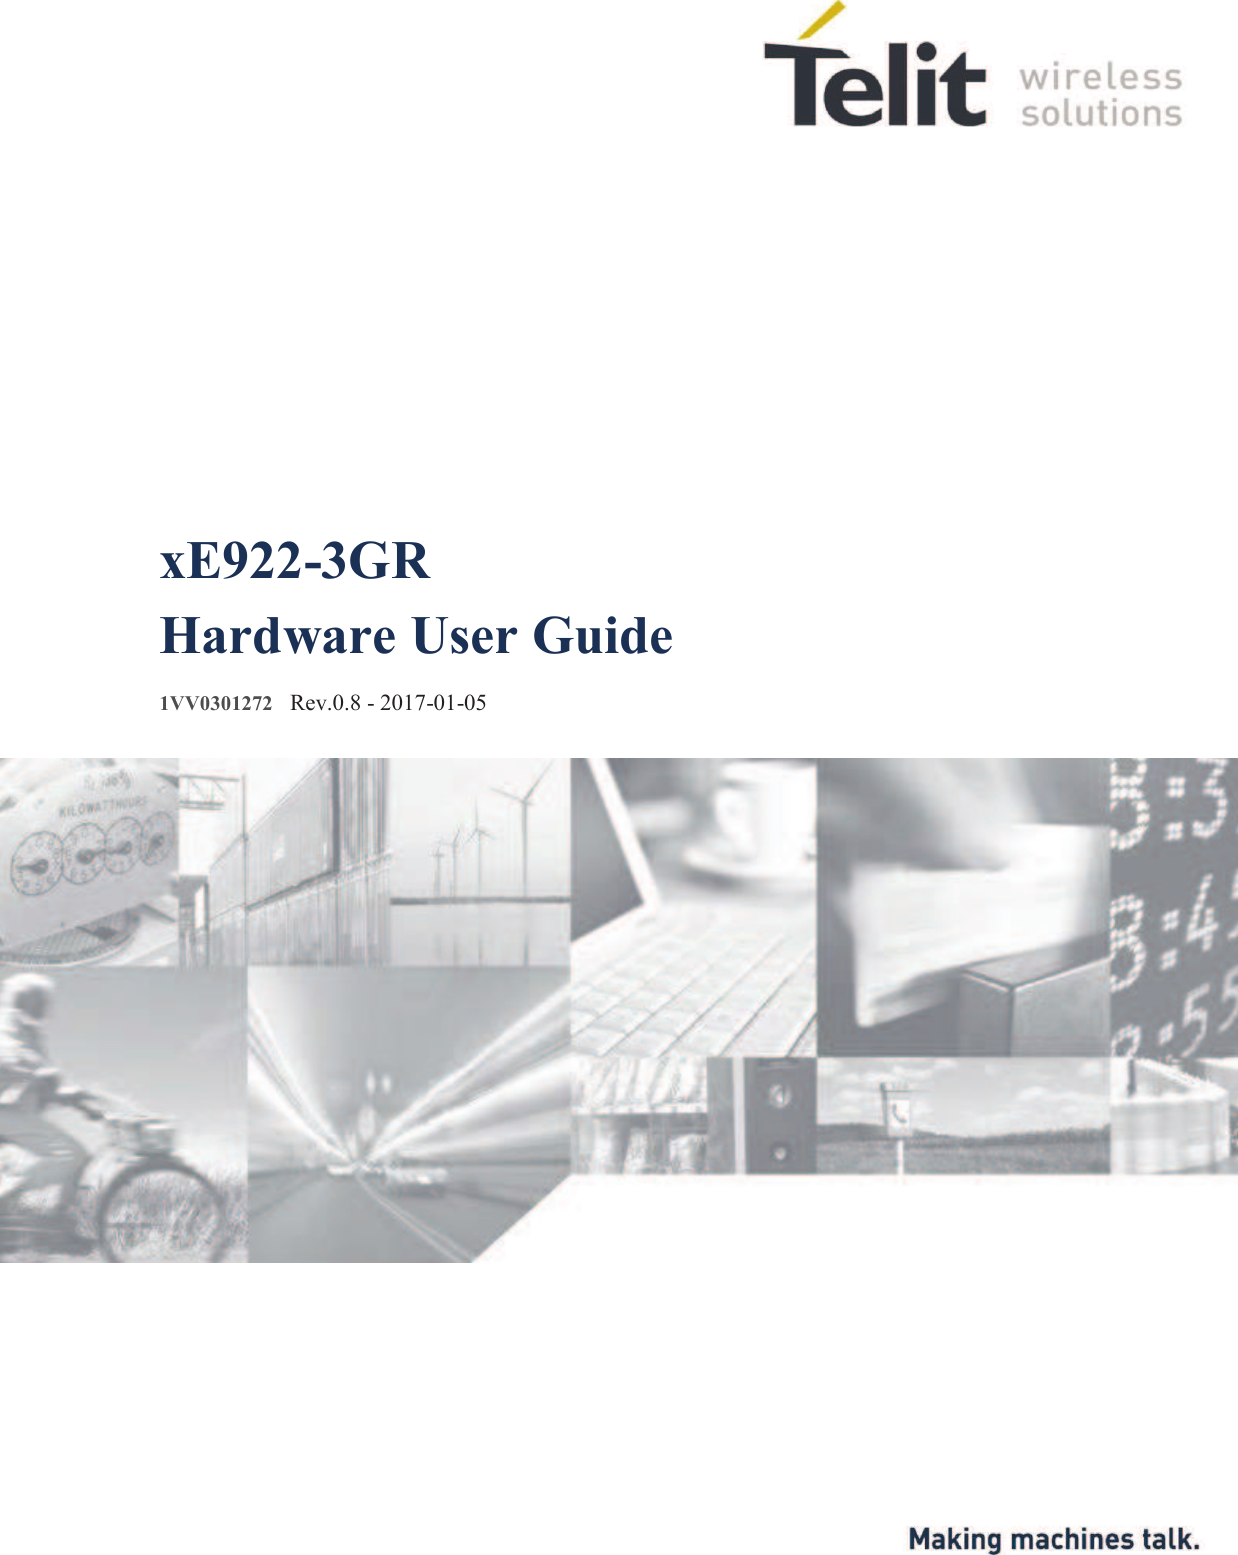                      xE922-3GR Hardware User Guide  1VV0301272   Rev.0.8 - 2017-01-05 